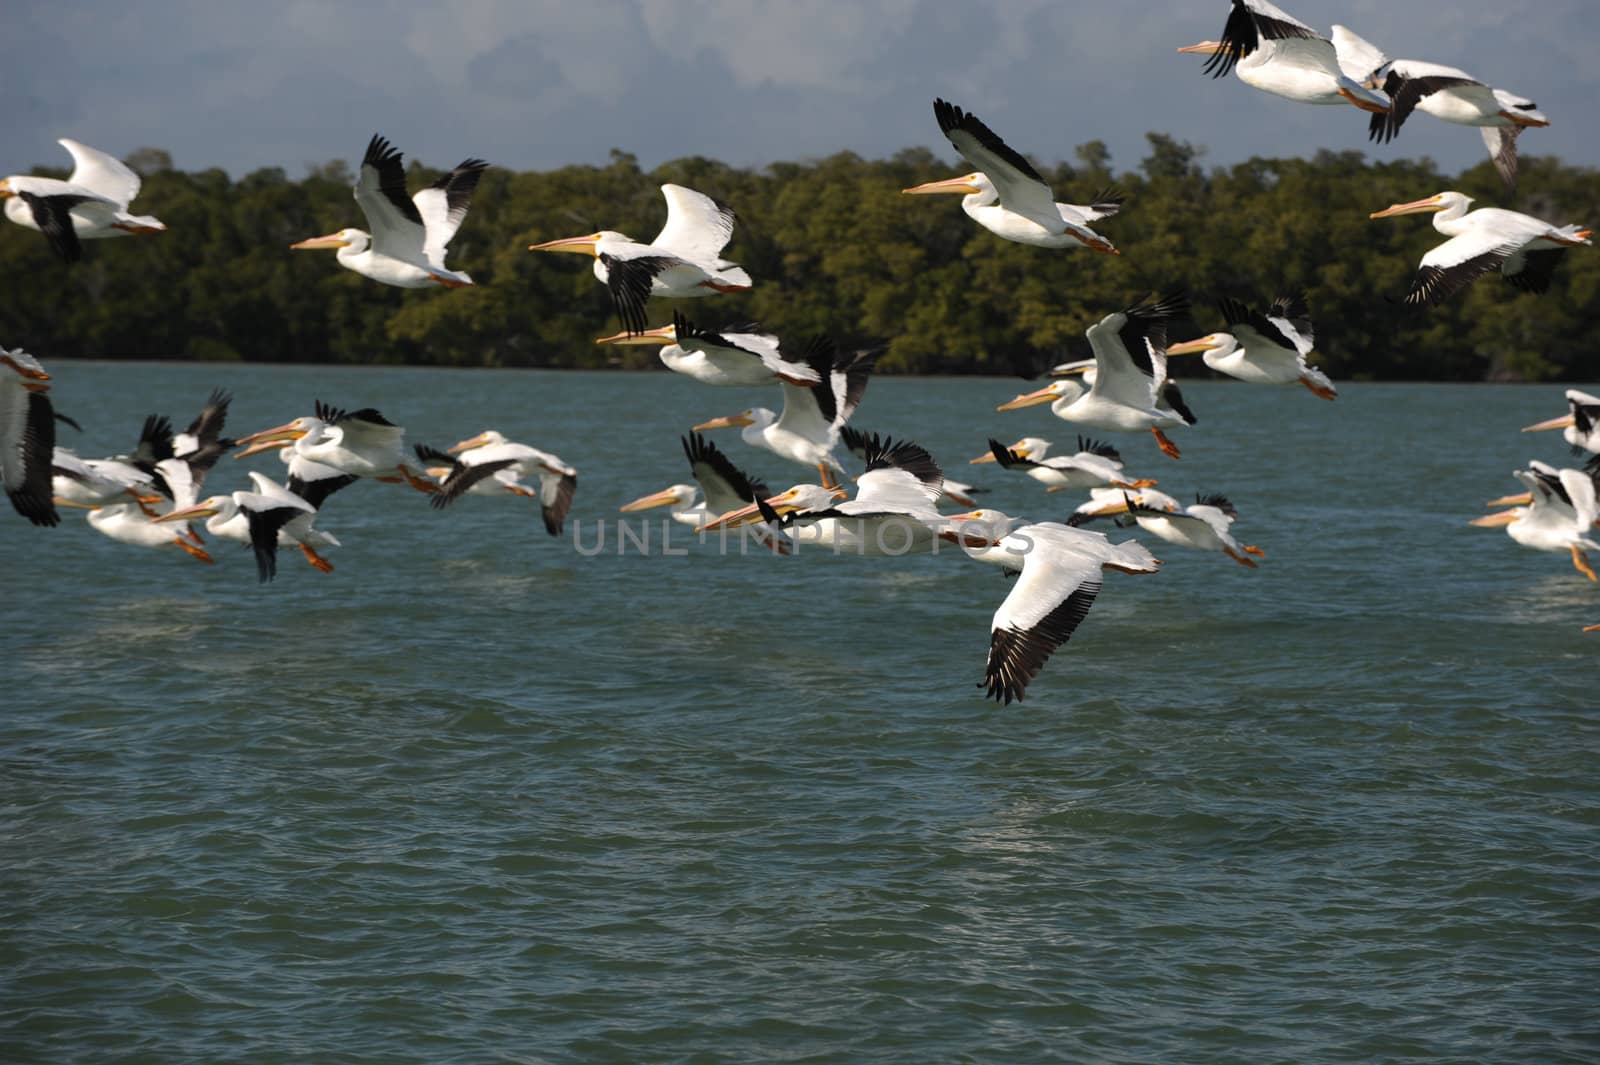 White pelicans flying over ocean by ftlaudgirl